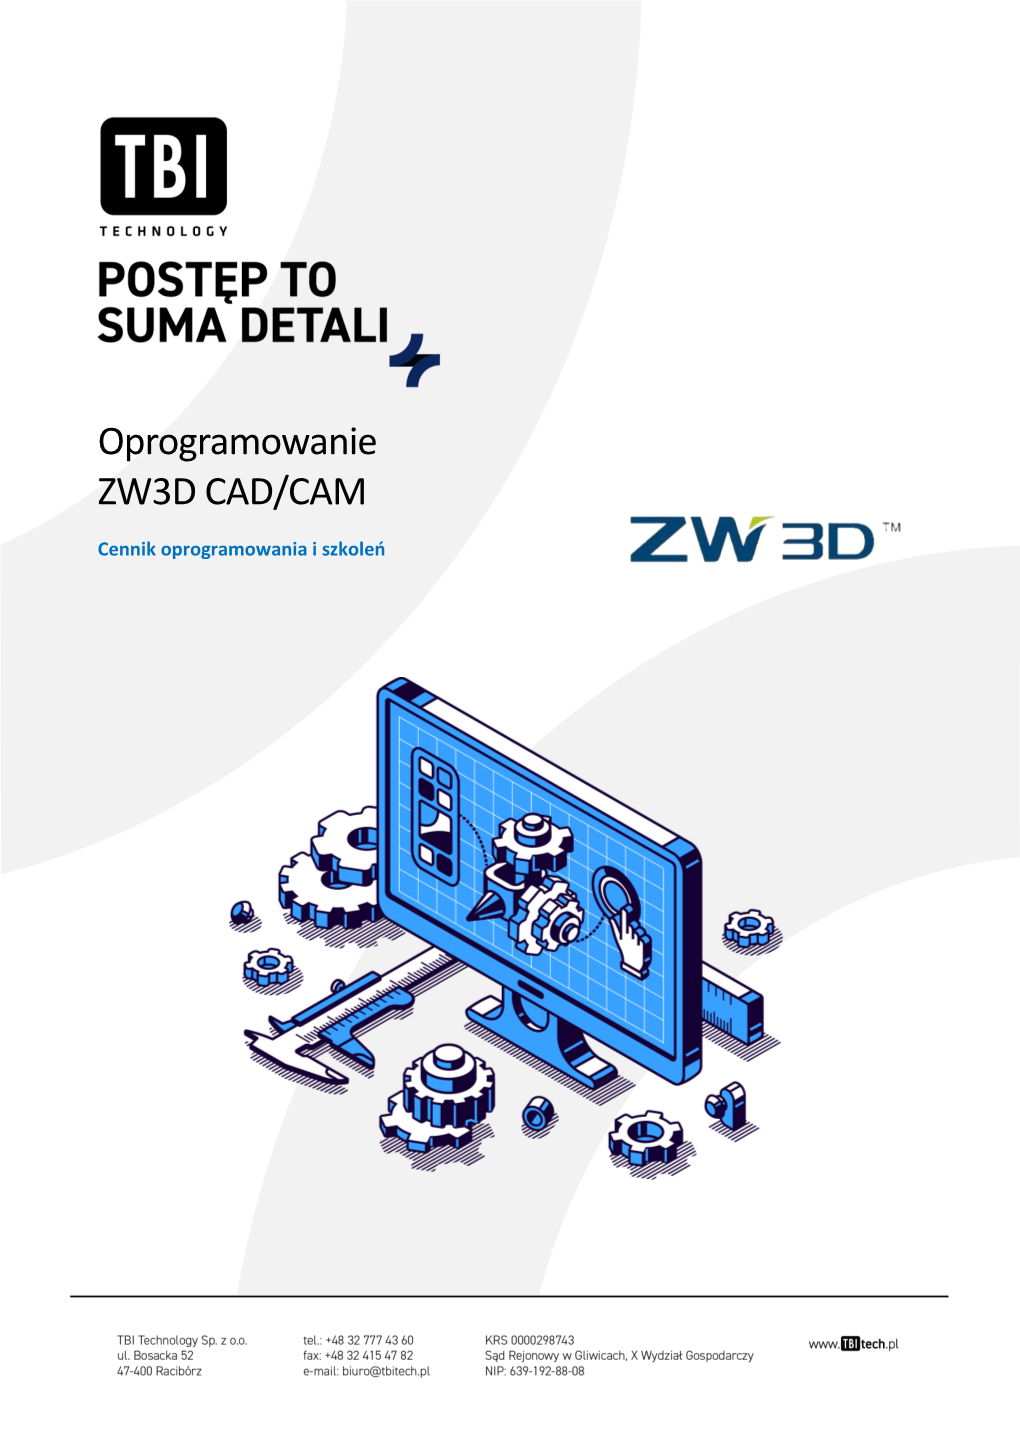 Oprogramowanie ZW3D CAD/CAM